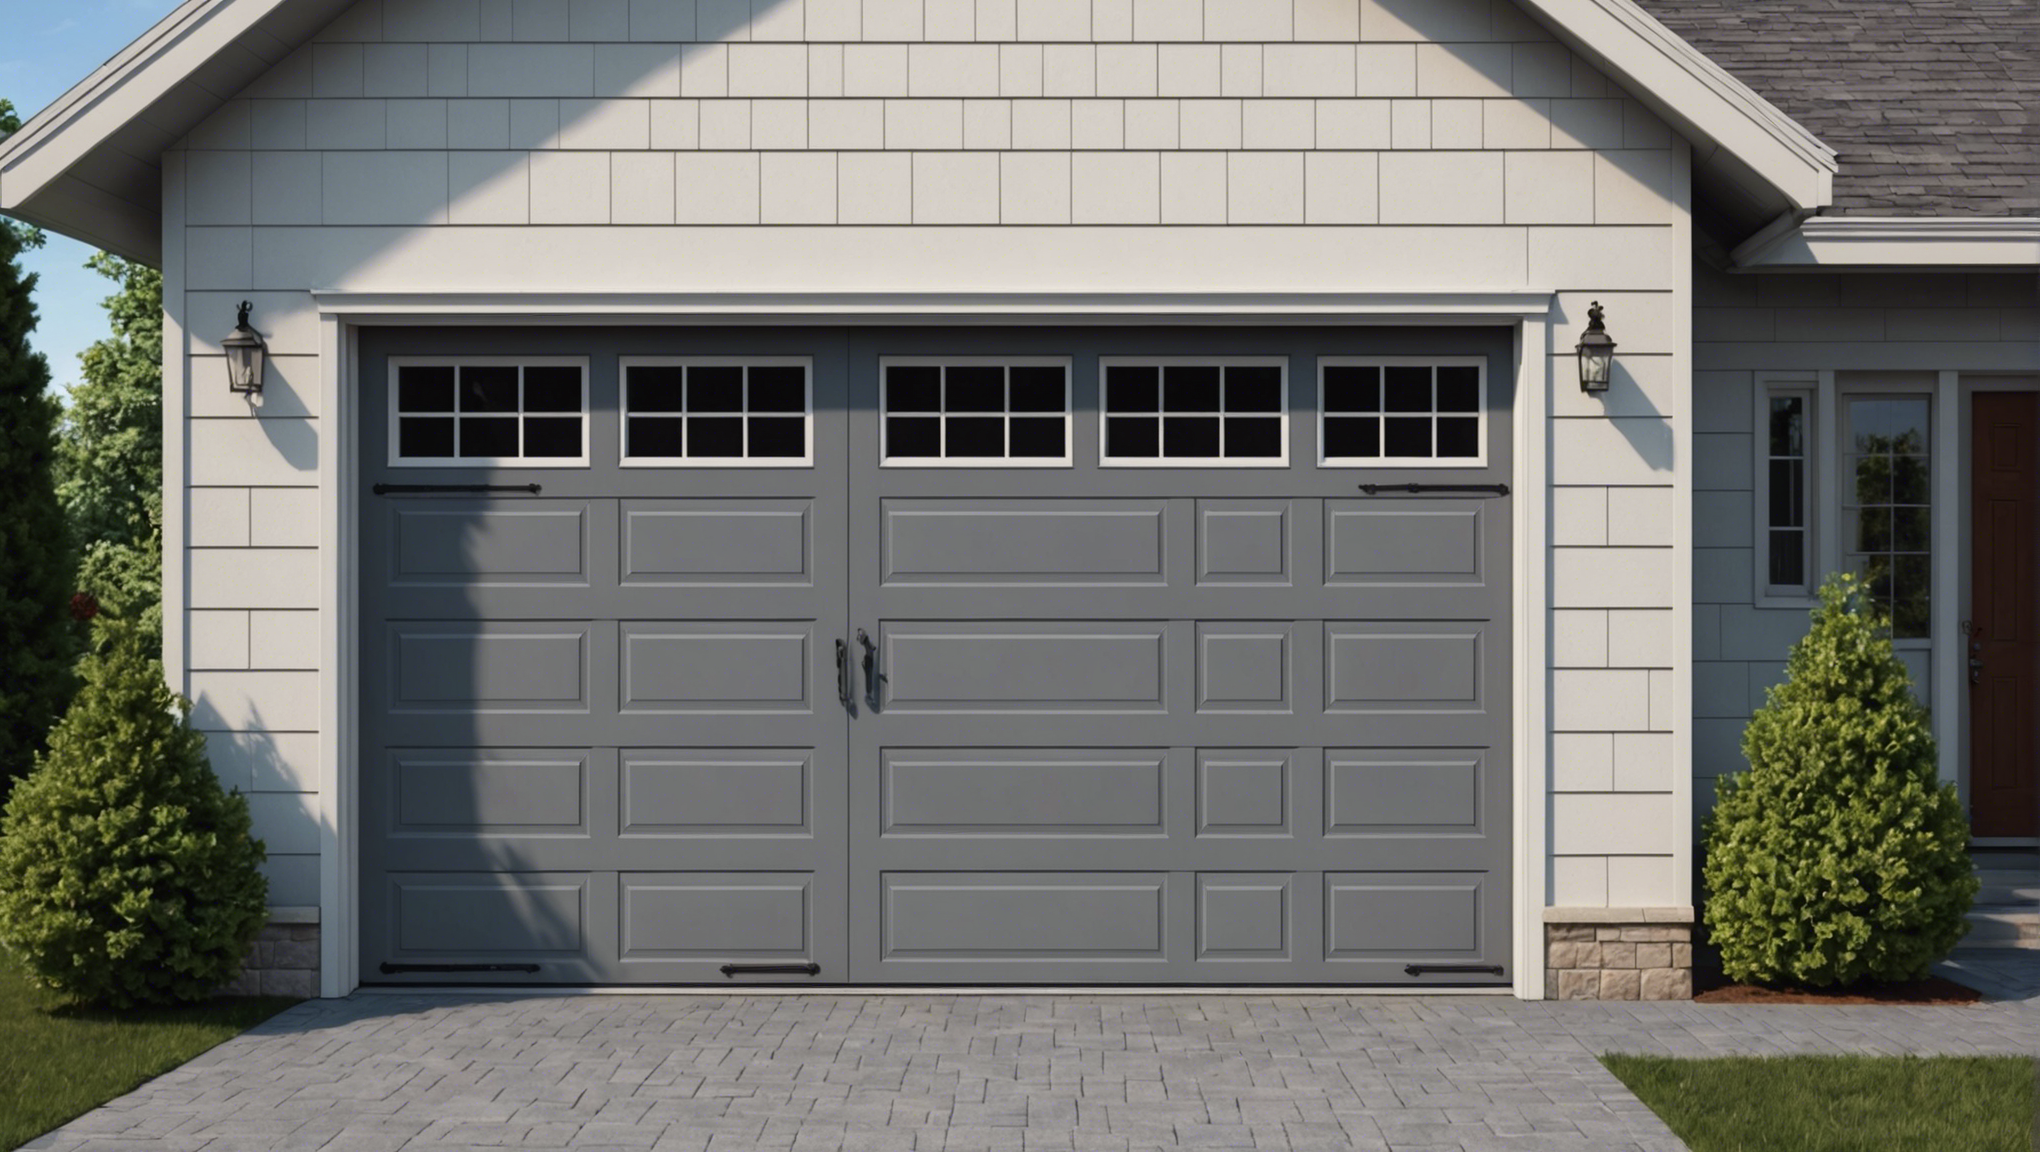 découvrez comment isoler efficacement la porte entre le garage et la maison pour améliorer l'isolation thermique et réduire les pertes d'énergie.